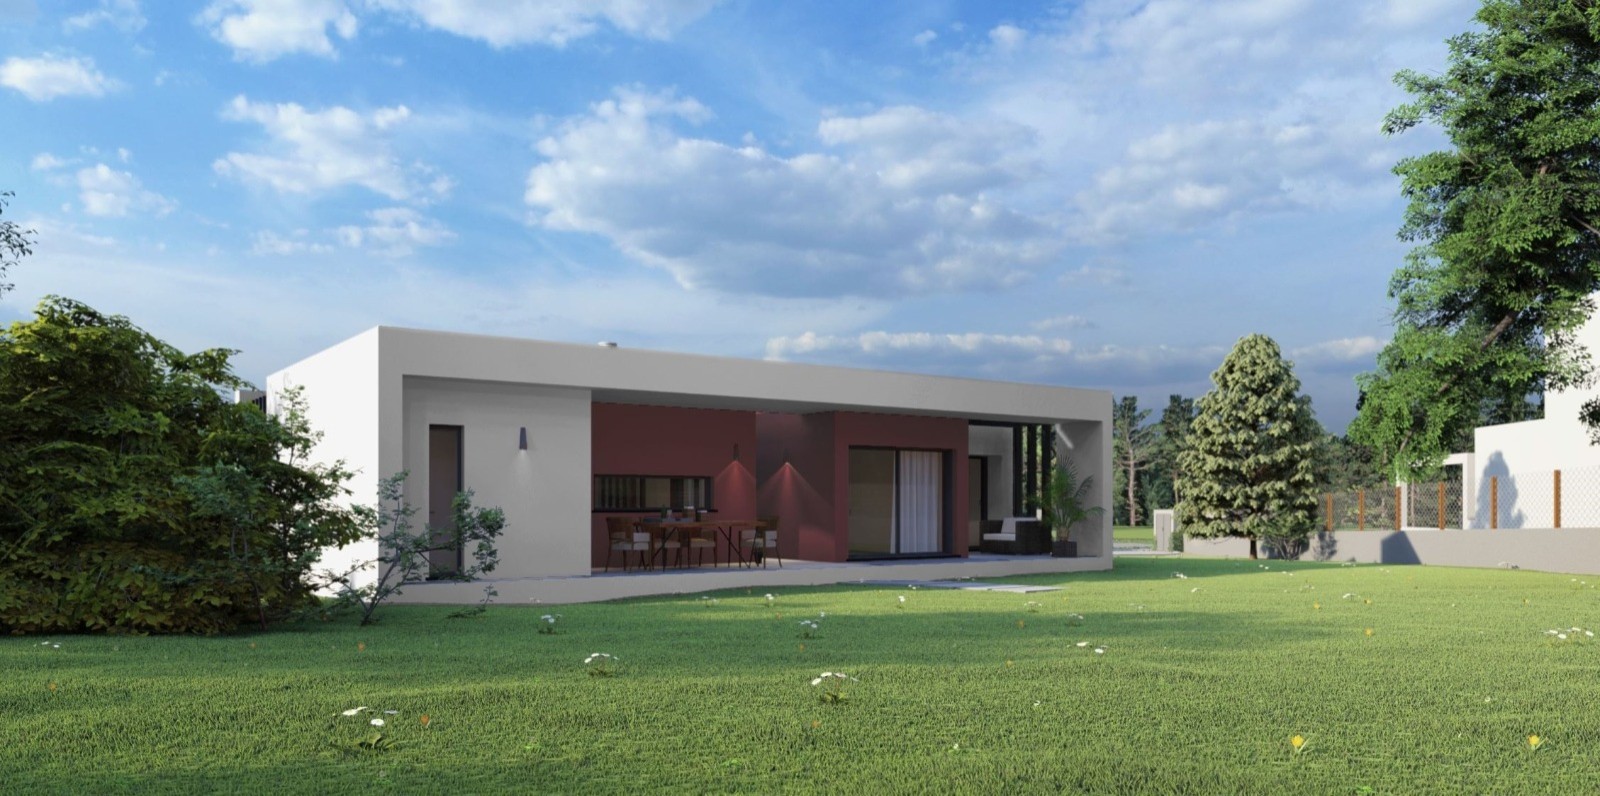 Building land, for sale, in Golf Resort - Algarve_215503